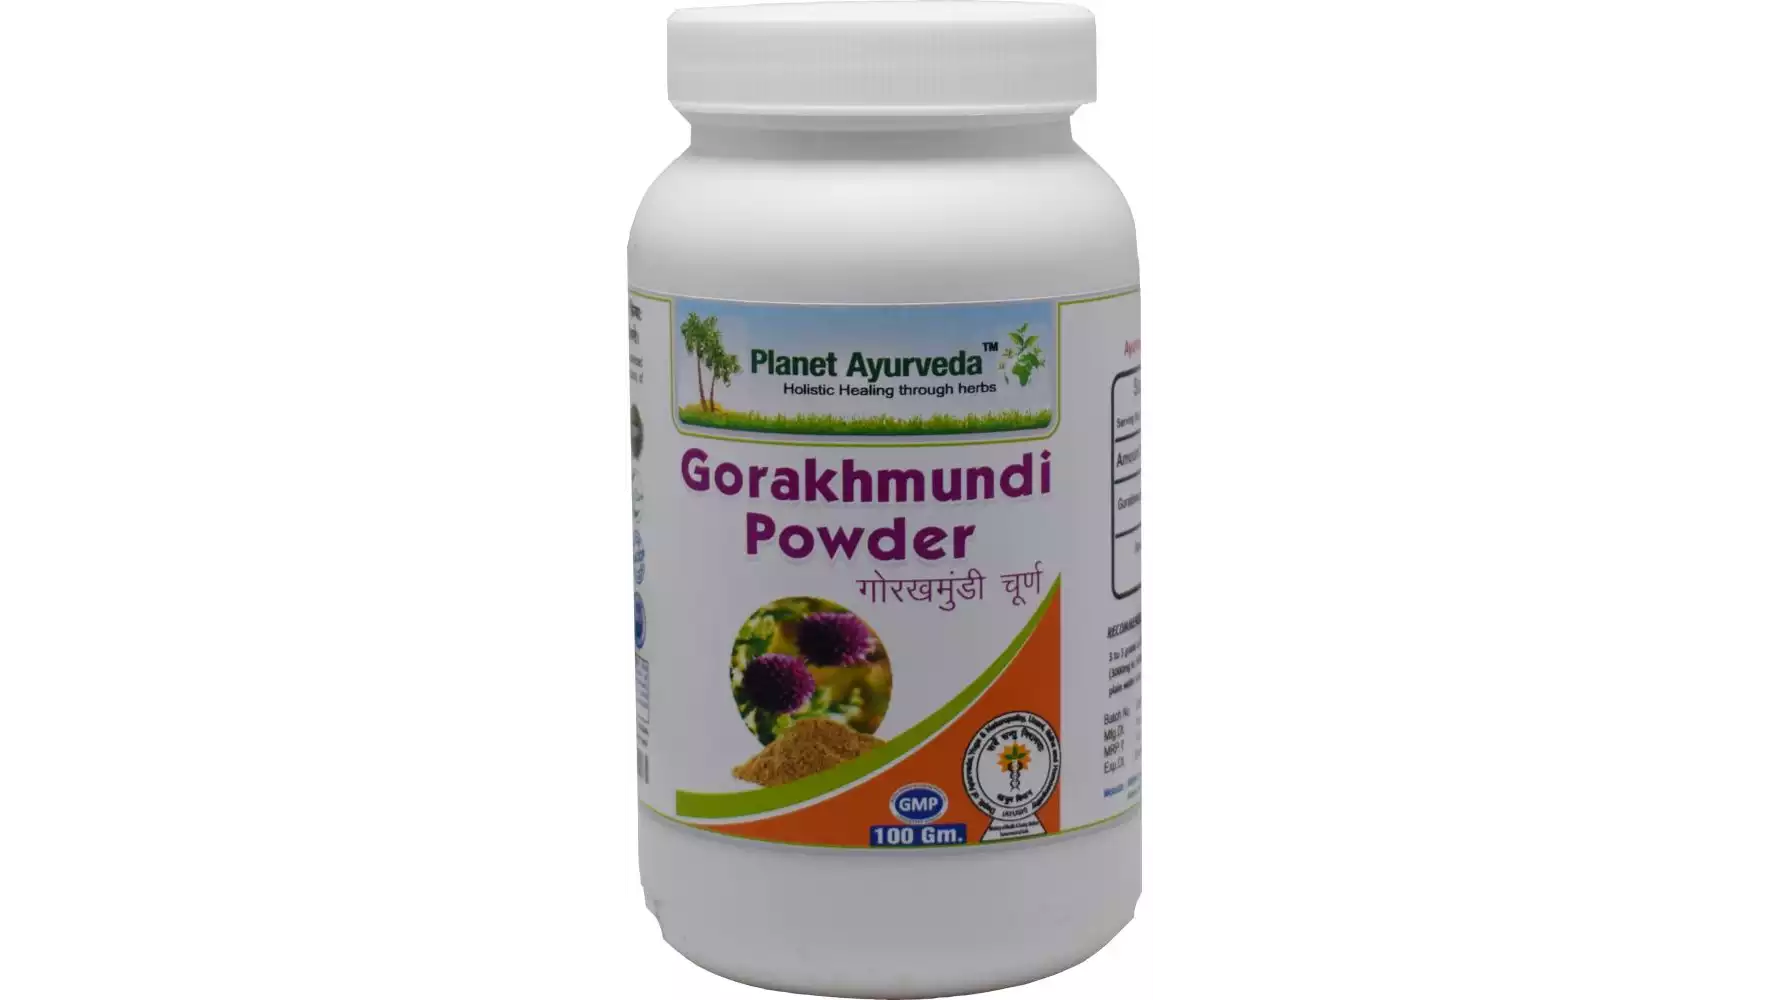 Planet Ayurveda Gorakhmundi Powder (100g, Pack of 2)